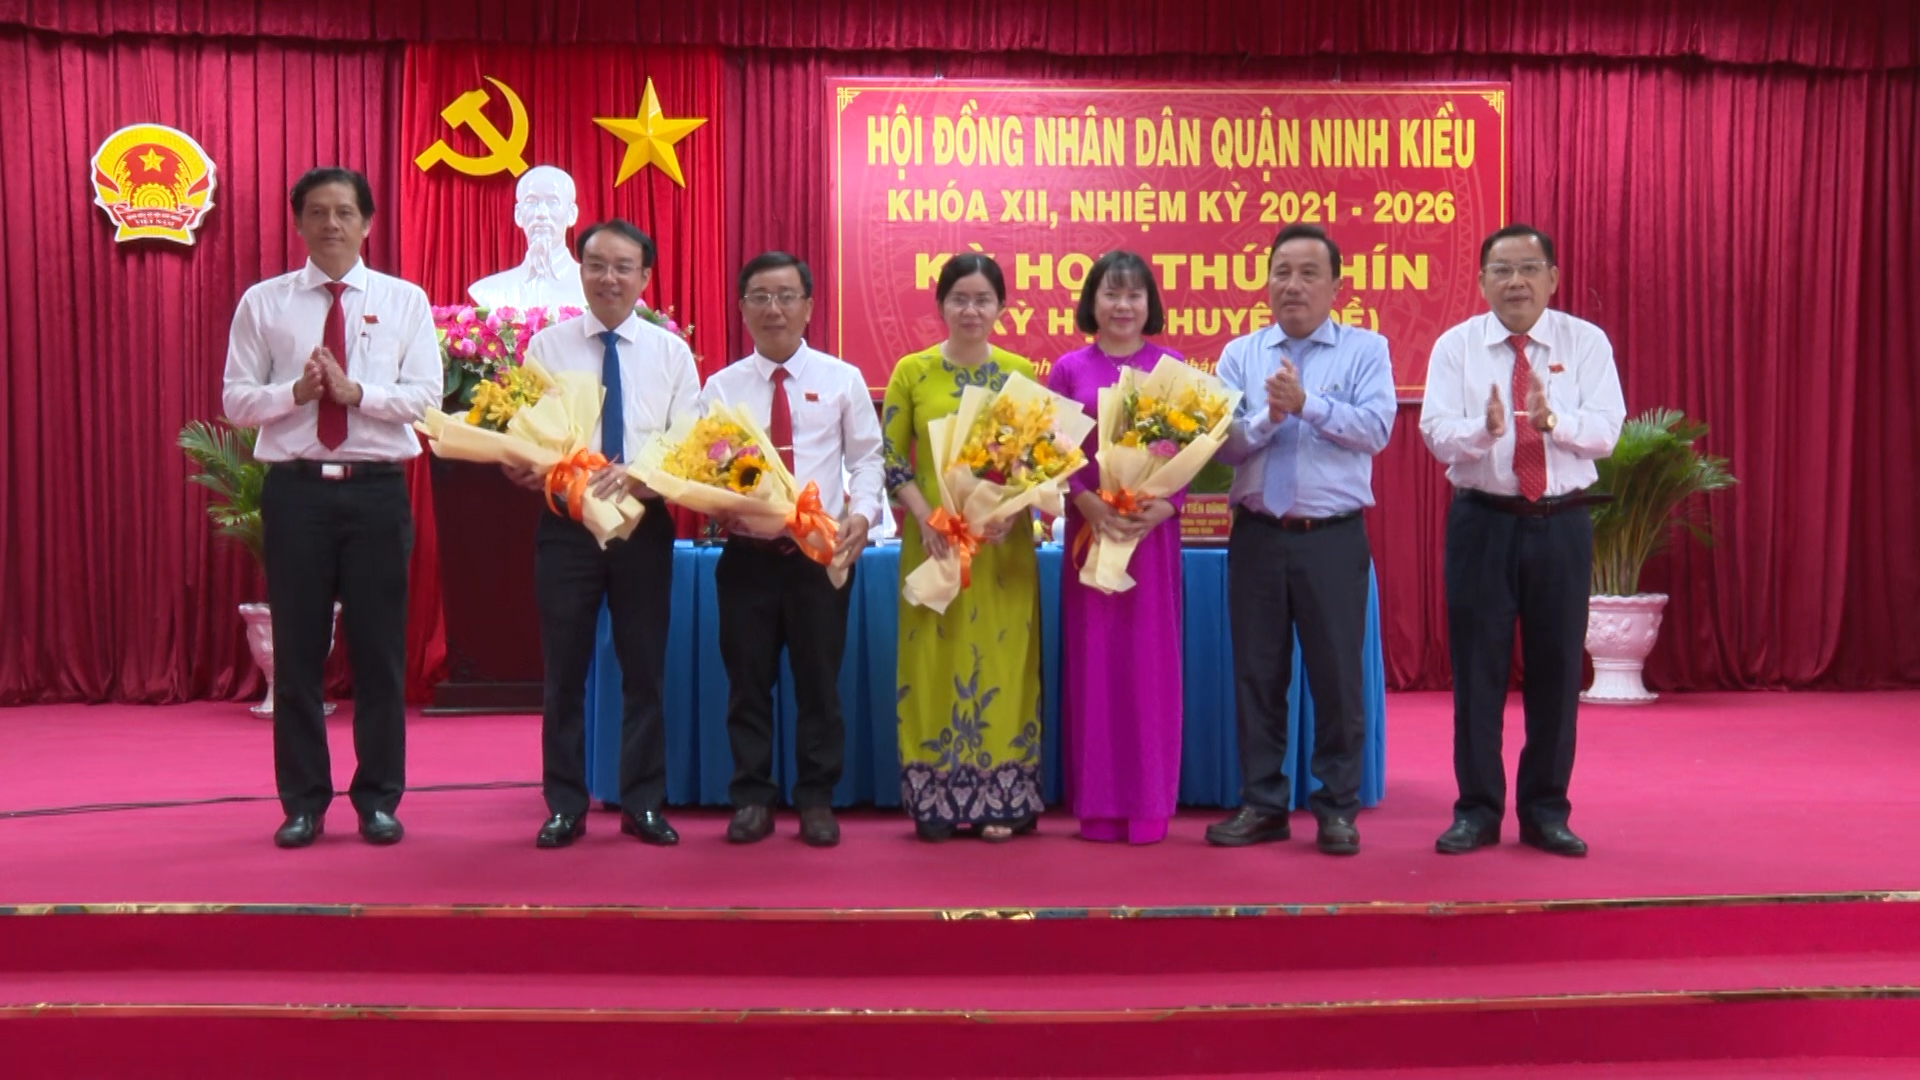 Hình 6: Lãnh đạo quận Ninh Kiều trao hoa cho các đại biểu